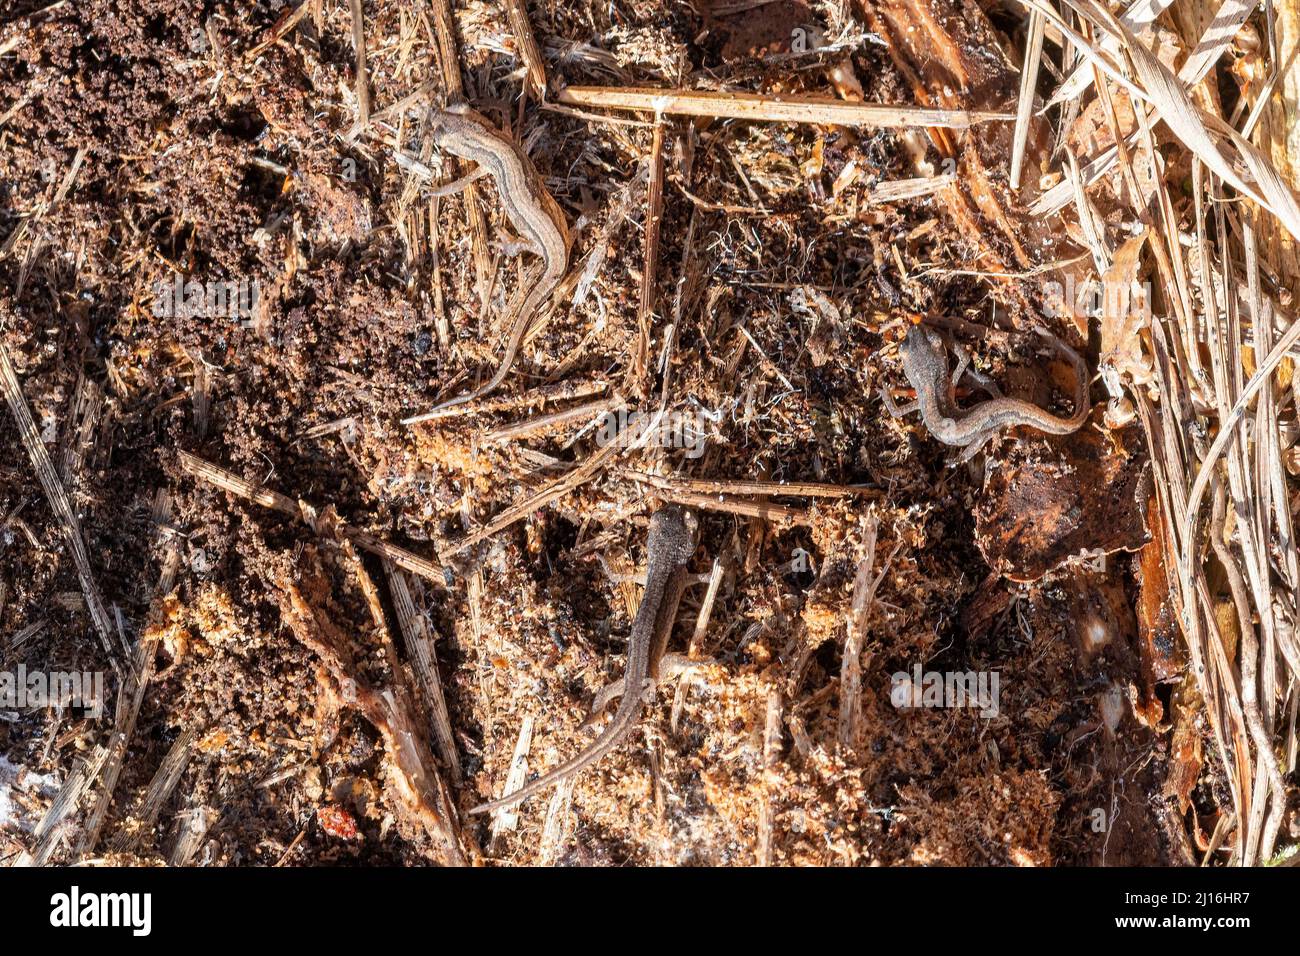 Tre neonati di palmate (Lissotriton helveticus), neonati immaturi di fase terrestre trovati sotto un ceppo umido, Regno Unito, durante marzo Foto Stock